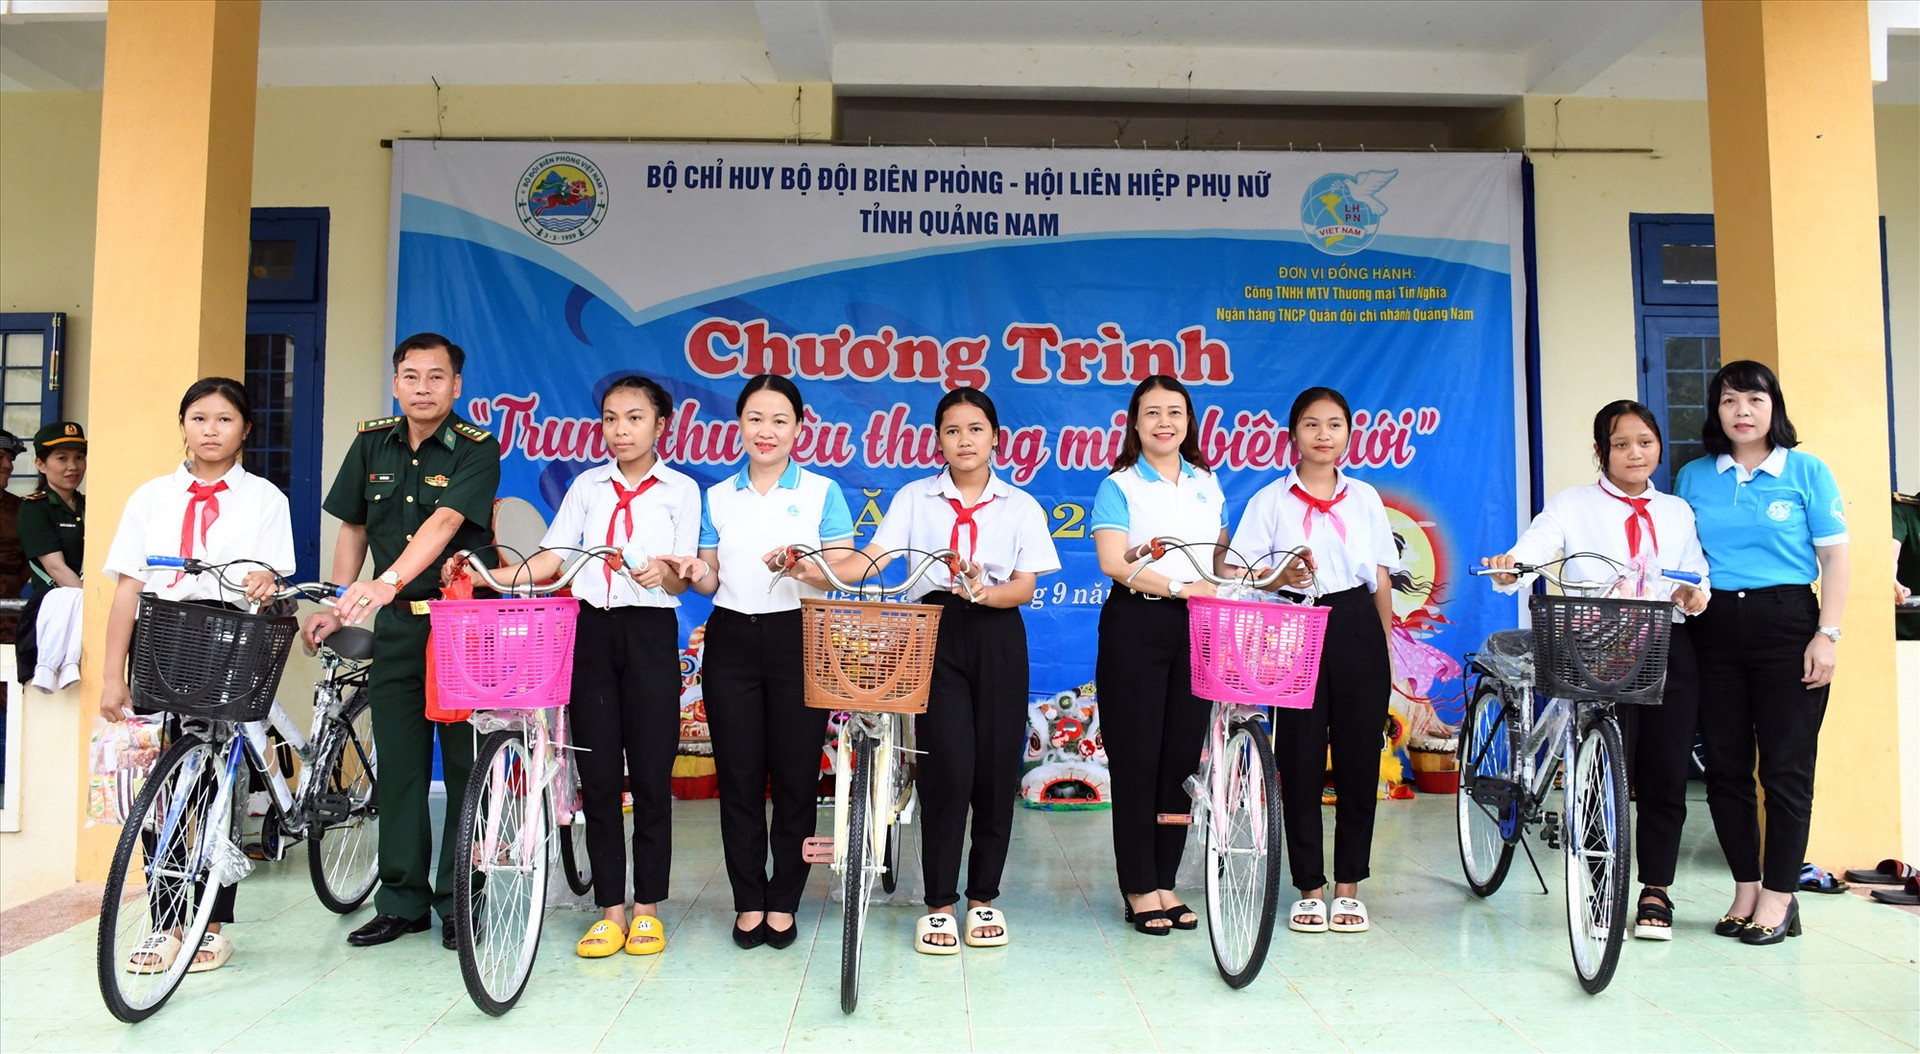 Lãnh đạo, đảng viên Chi bộ cơ quan Hội LHPN Quảng Nam tặng xe đạp cho học sinh Trường PTDT bán trú THCS liên xã Đắc Pring, Đắc Pre (Nam Giang) trong chương trình “Trung thu yêu thương miền biên giới” năm 2022. Ảnh: Hội LHPN tỉnh